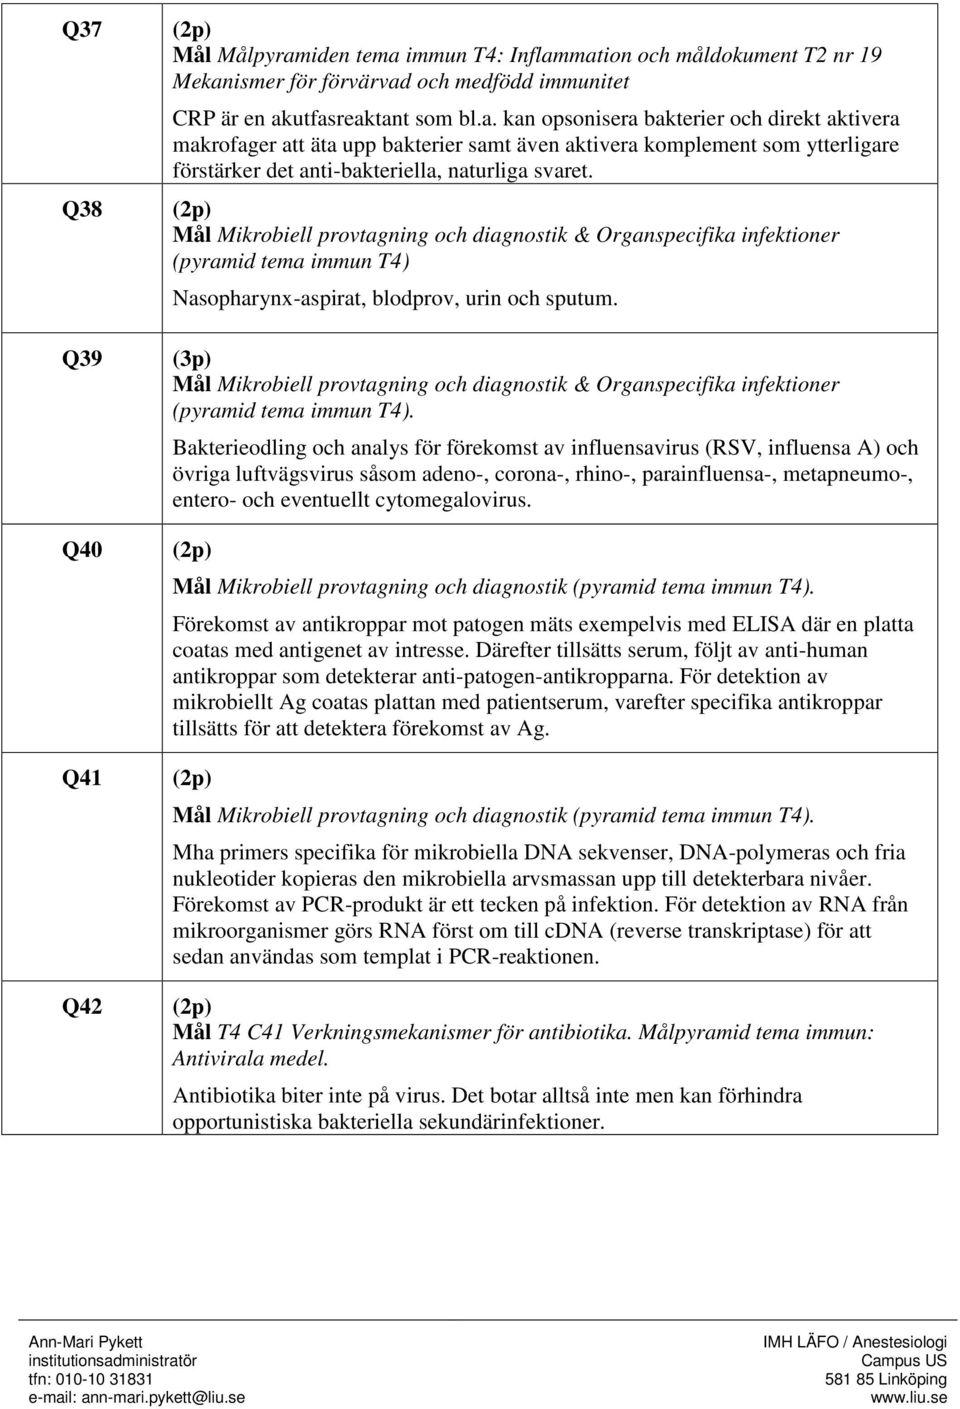 Mål Mikrobiell provtagning och diagnostik & Organspecifika infektioner (pyramid tema immun T4) Nasopharynx-aspirat, blodprov, urin och sputum.